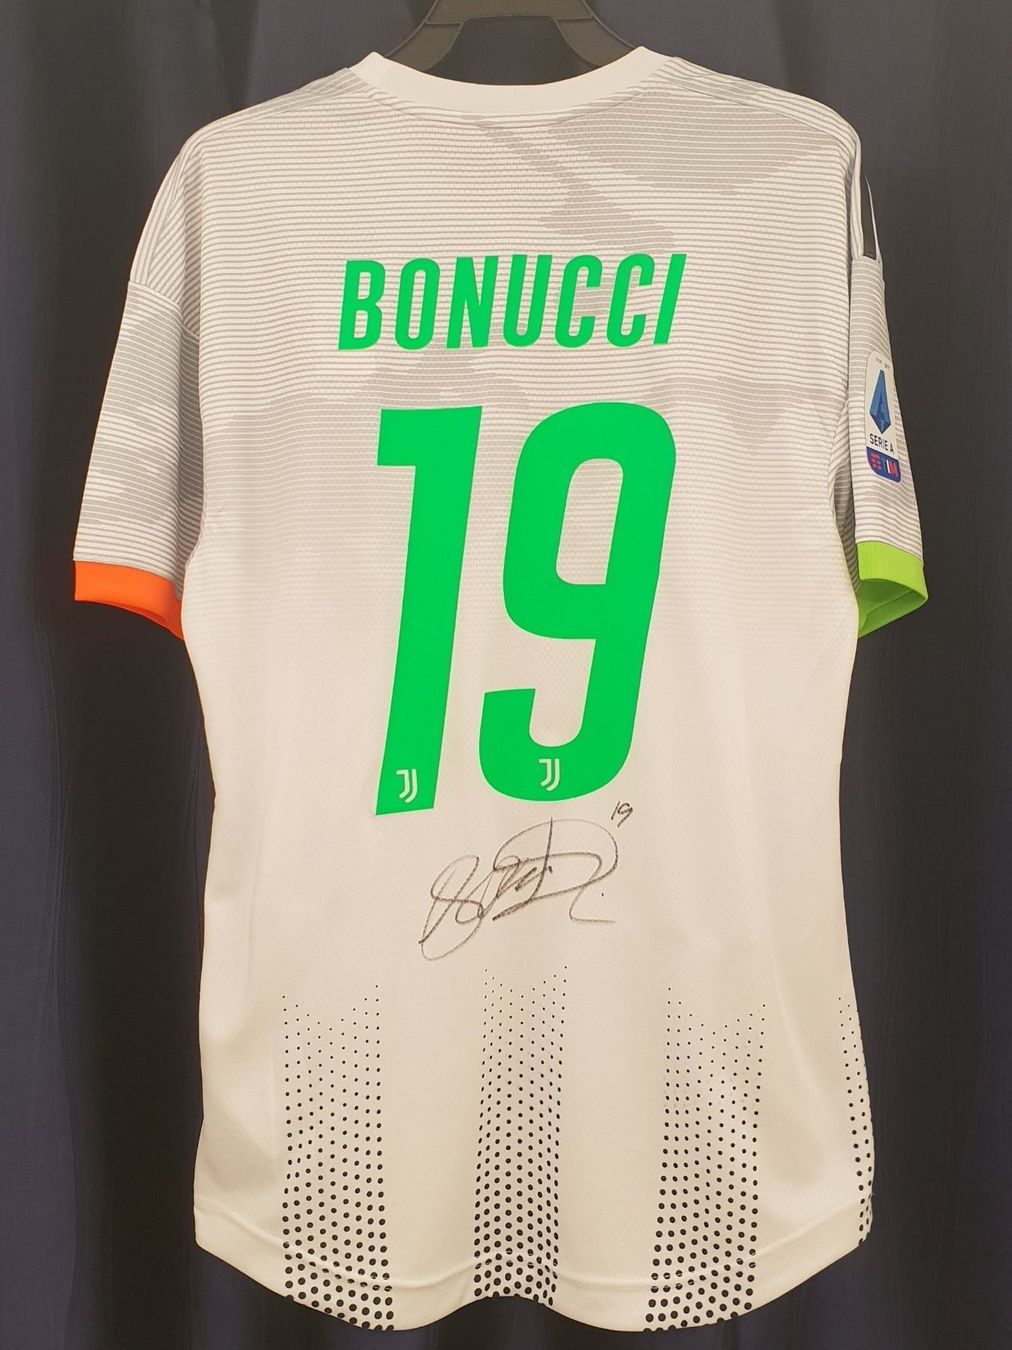 Leonardo Bonucci Juventus Turin Trikot kaufen auf Ricardo